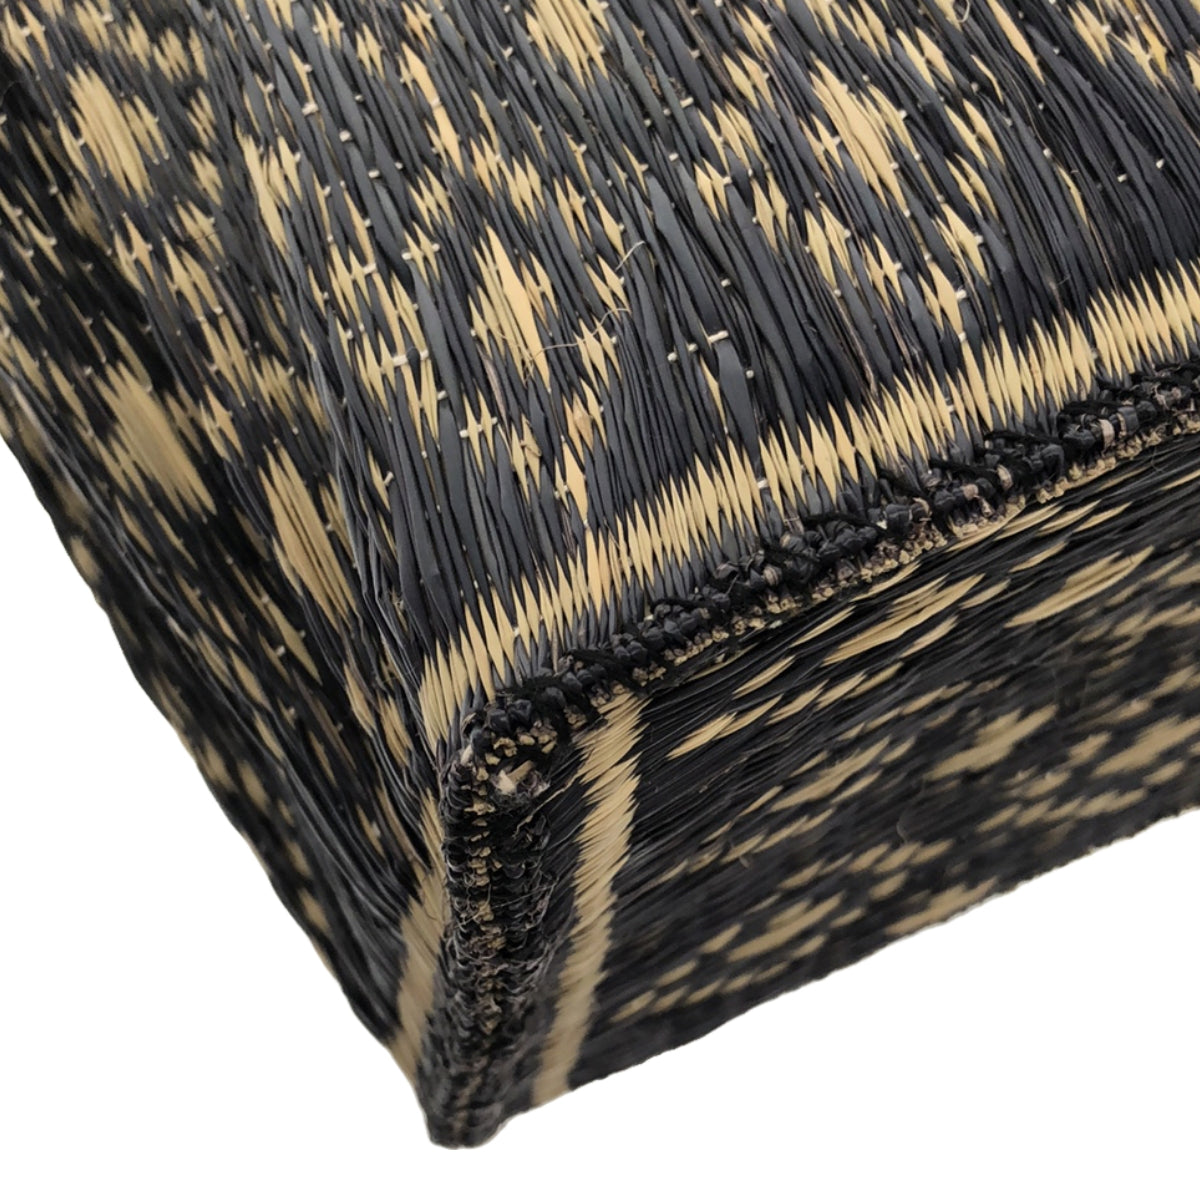 45r / フォーティファイブアール | 葦の手織りトートバッグ |